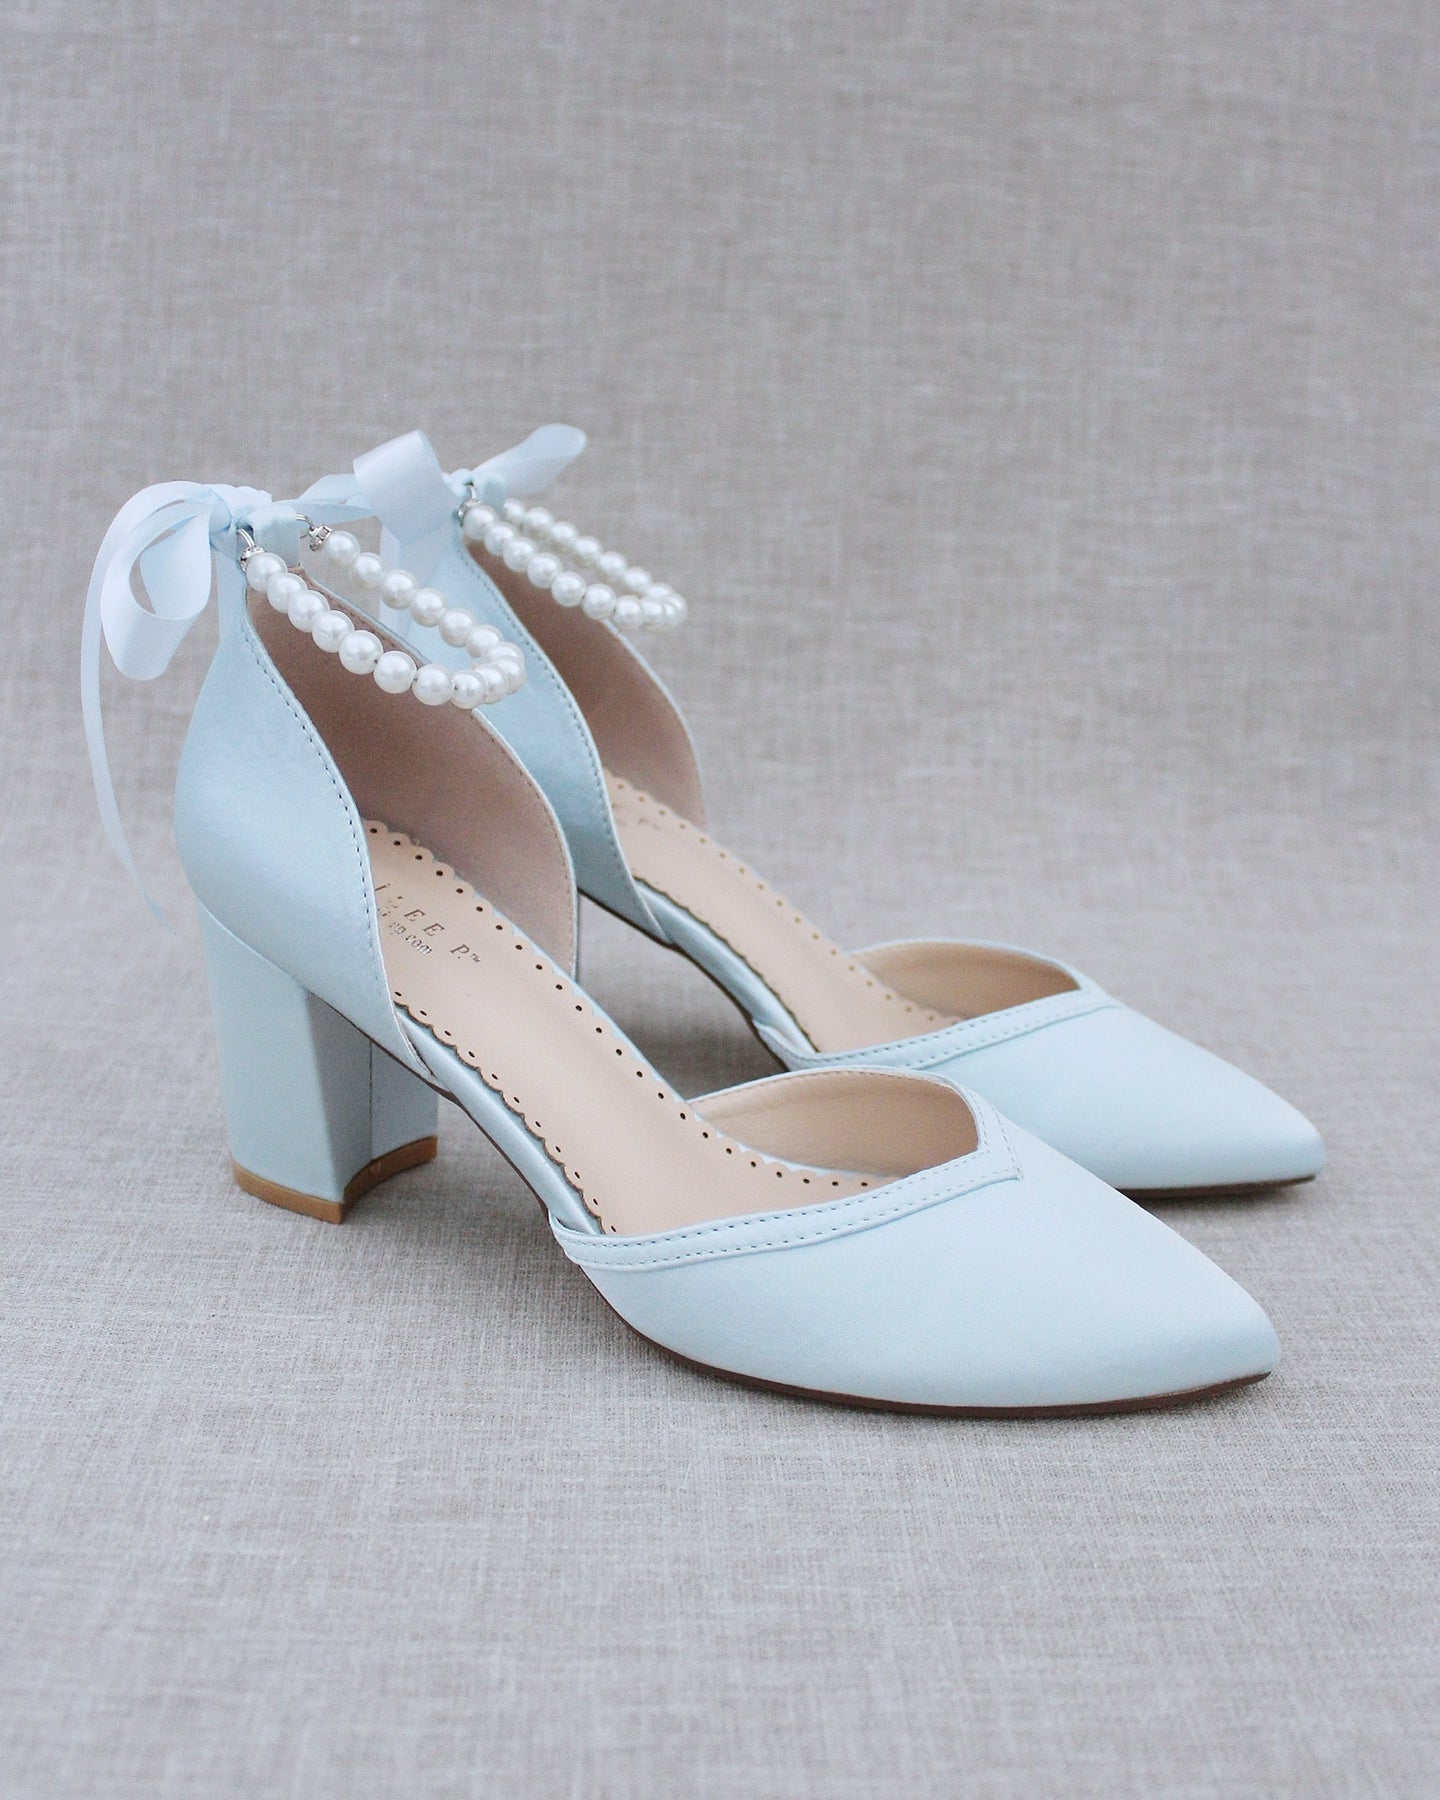 White Satin Heels - Pearl Platform Heels - High Heel Sandals - Lulus